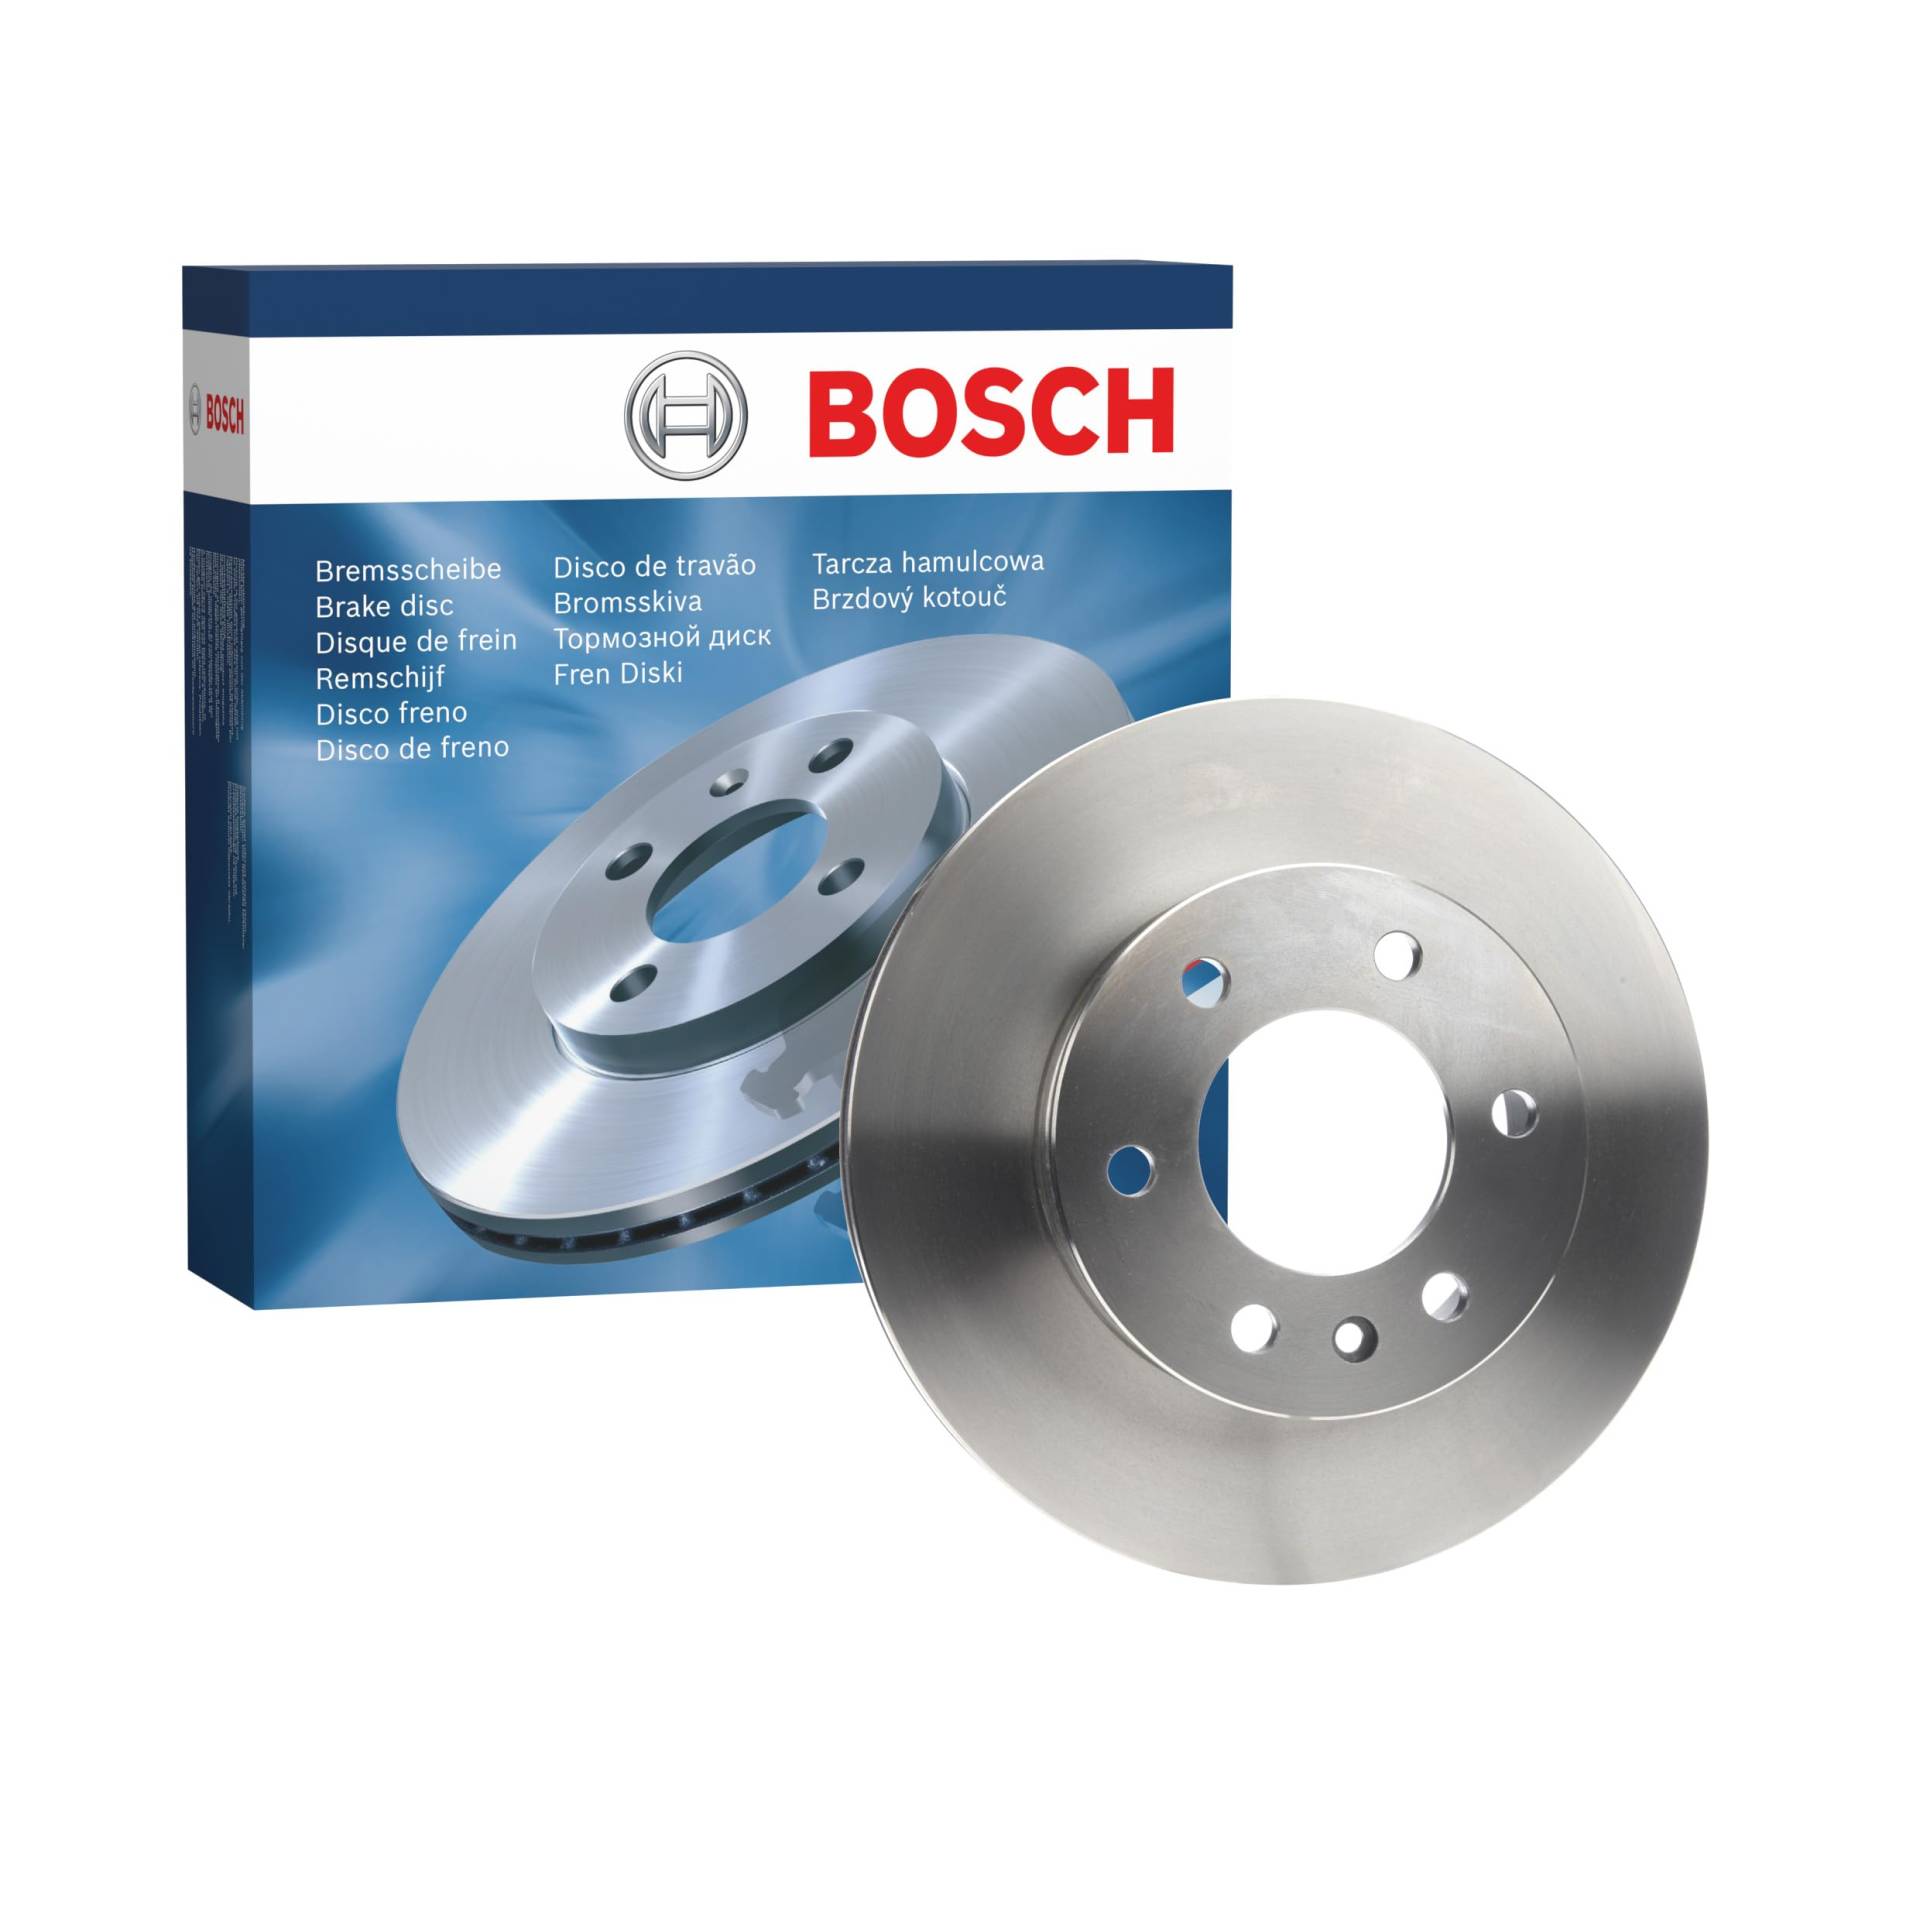 Bosch BD1988 Bremsscheiben - Vorderachse - ECE-R90 Zertifizierung - eine Bremsscheibe von Bosch Automotive